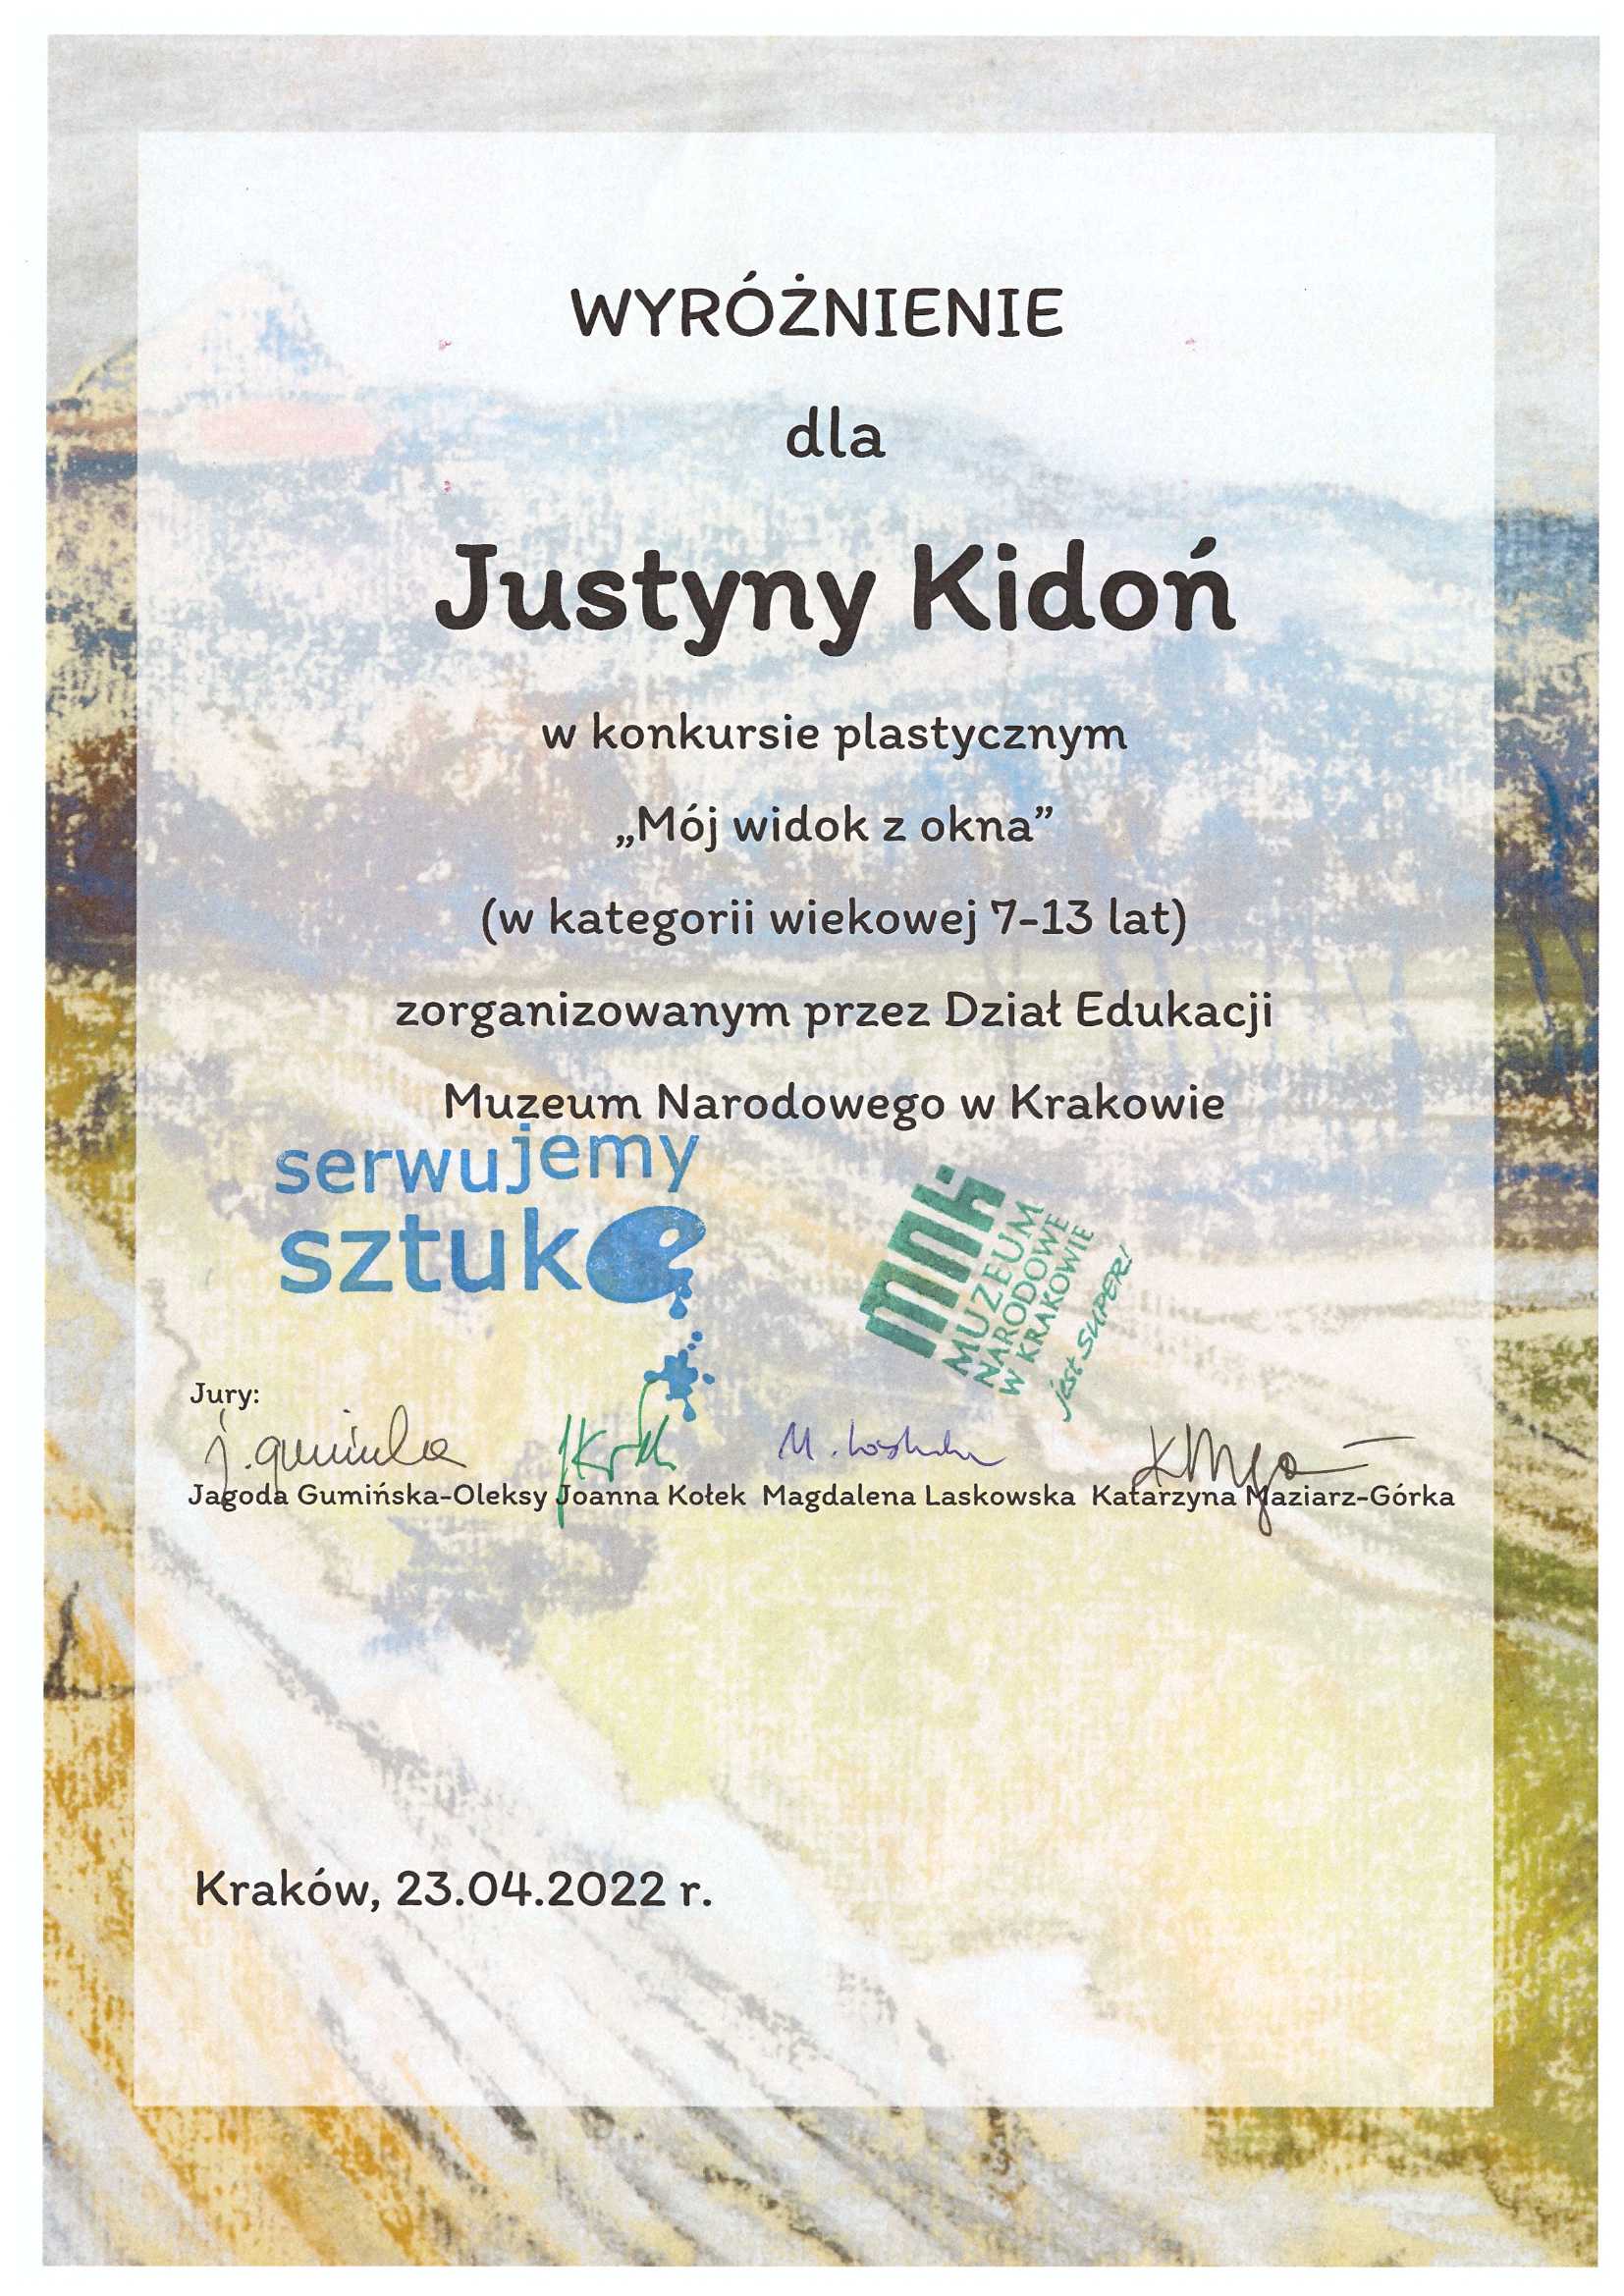 Wyróżnienie dla Justyny Kidoń w konkursie plastycznym "Mój widok z okna" zorganizowanym przez Dział Edukacji Muzeum Narodowego w Krakowie